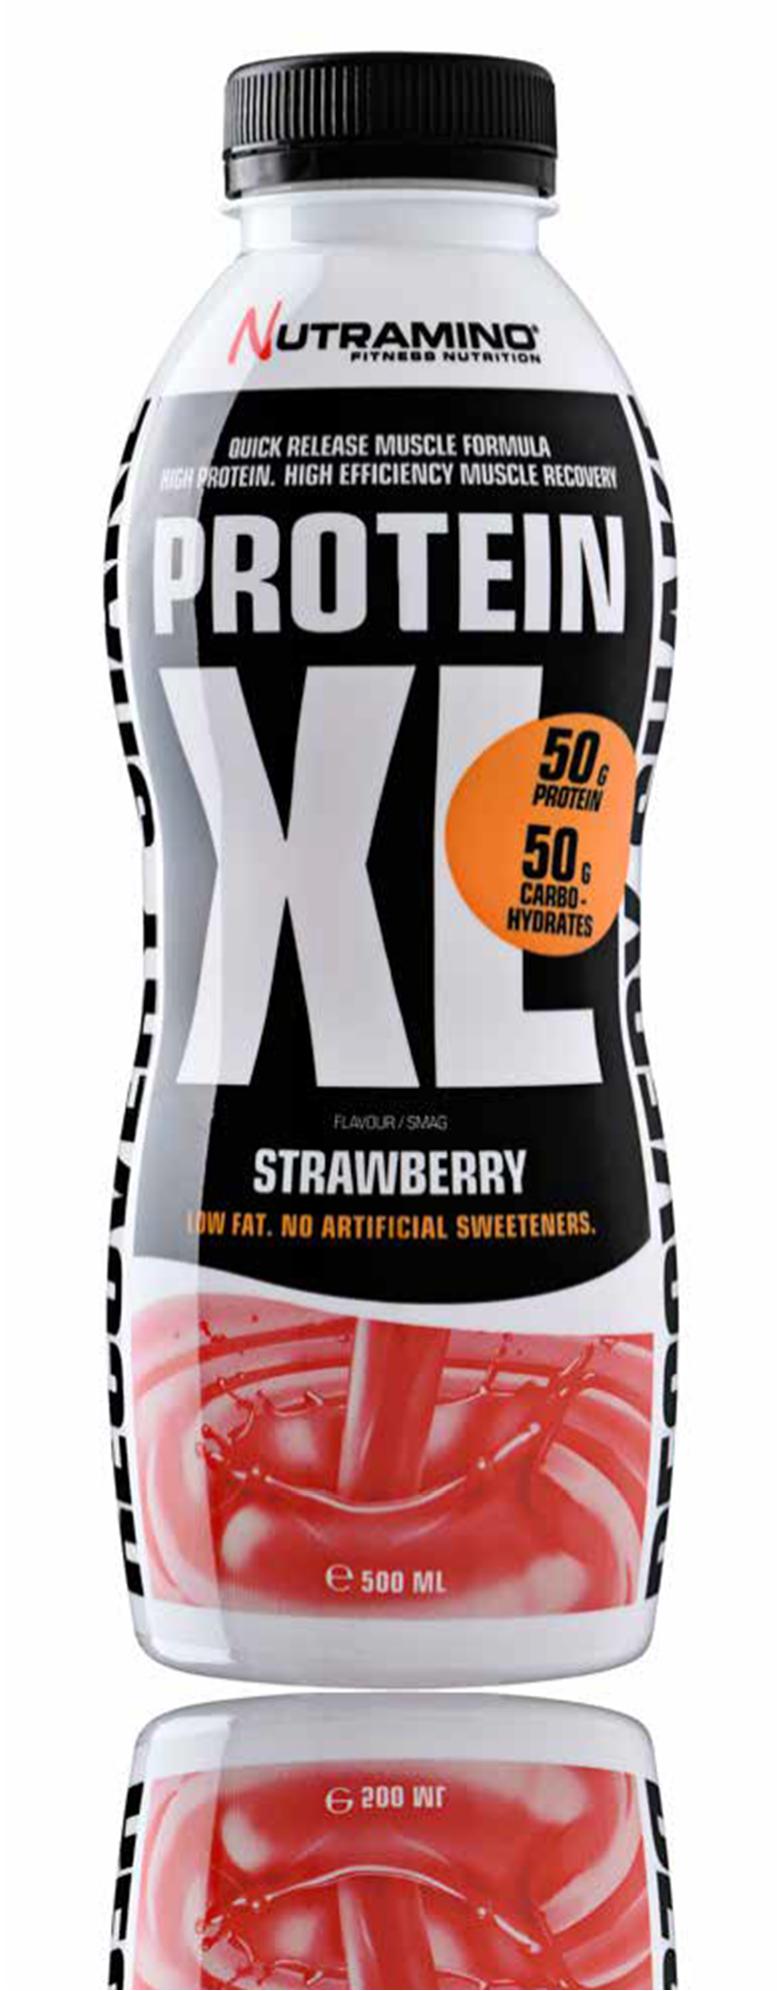 PROTEIN XL SHAKE STRAWBERRY 500 ml Nutramino Protein XL Shake on suunniteltu vastaamaan kovan intensiteetin harjoittelun vaatimuksia. Annoksessa on huikeat 50 g proteiinia ja 50 g hiilihydraattia.